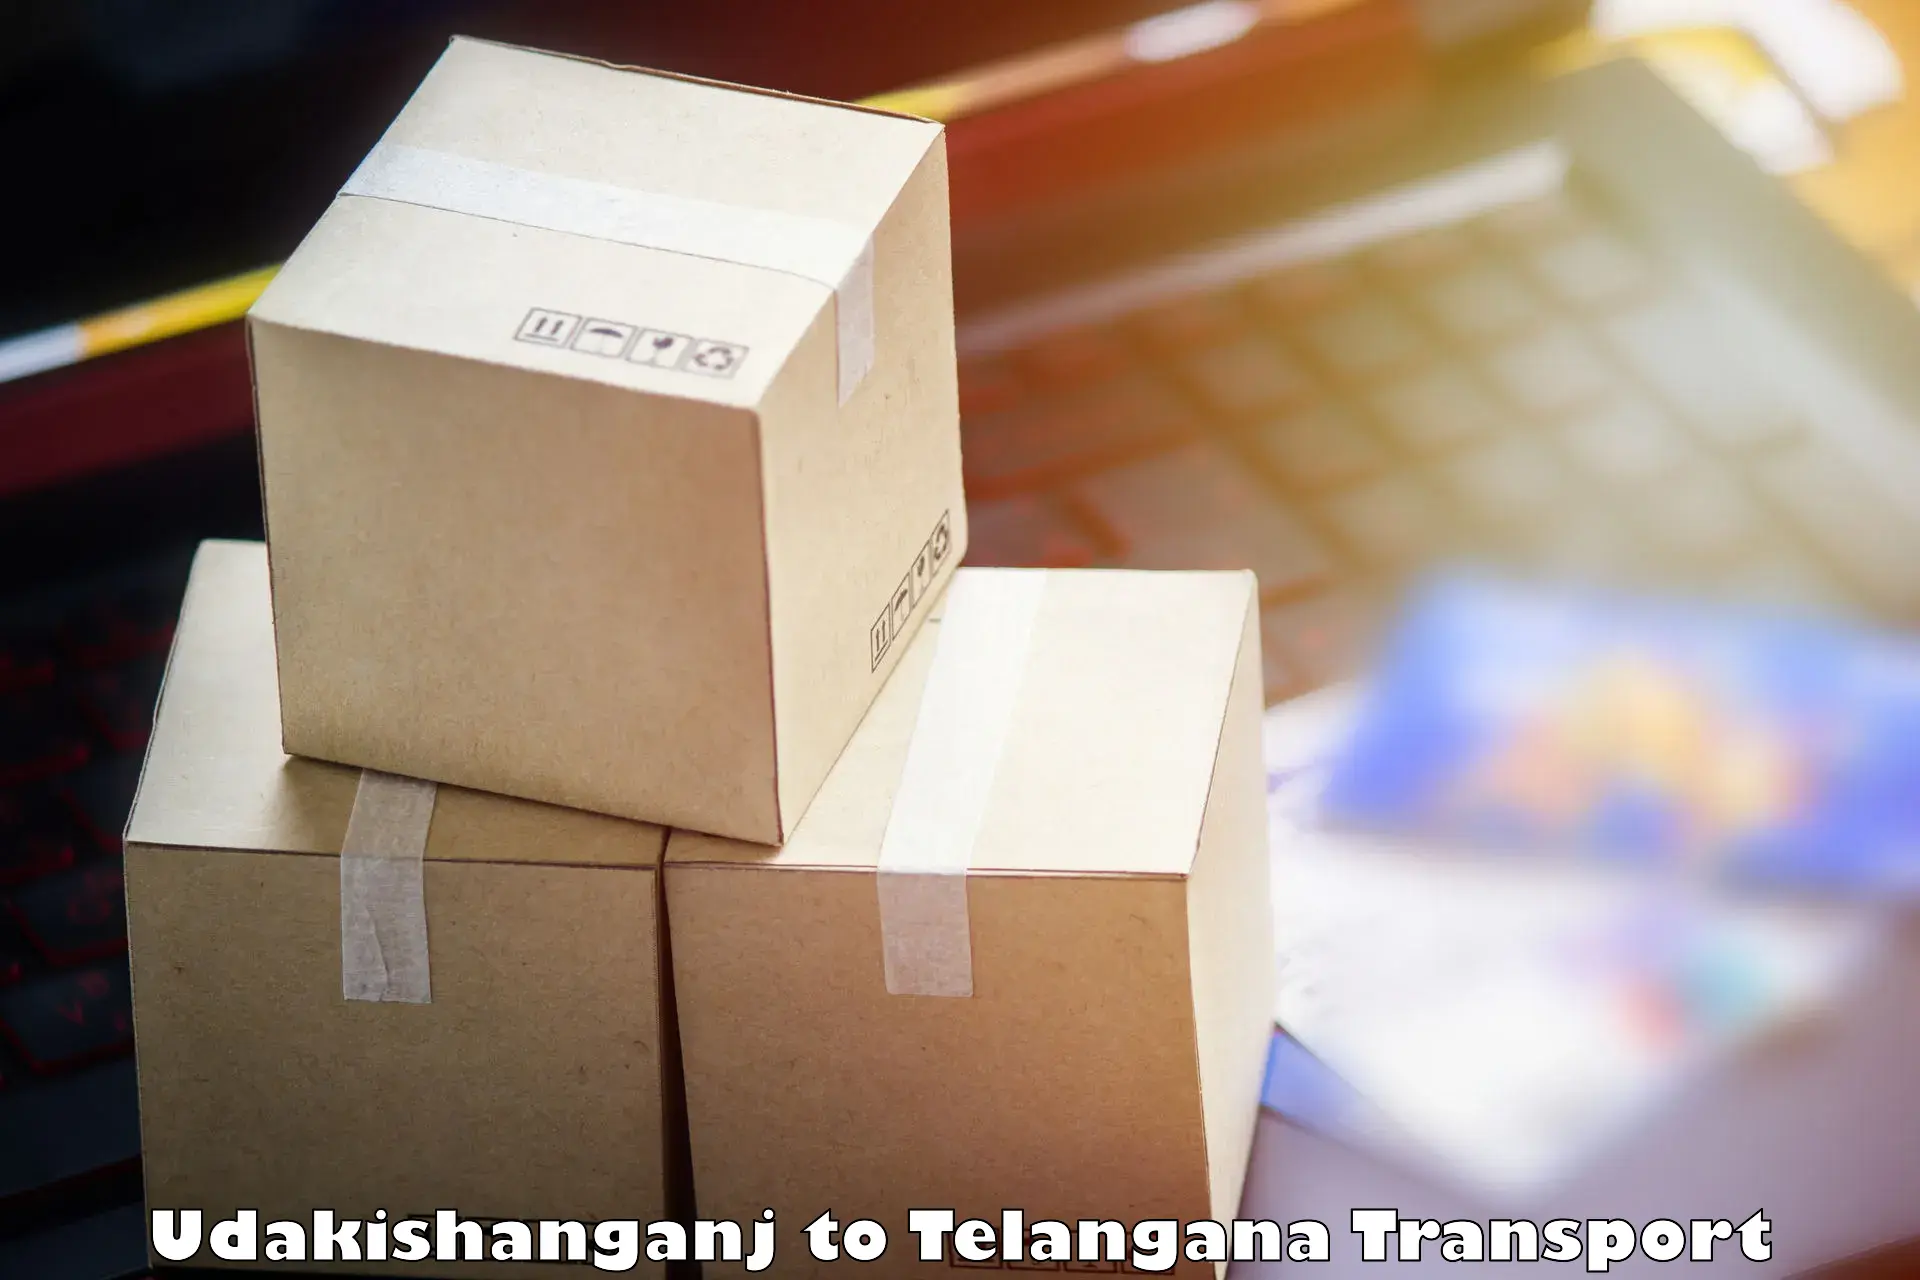 Online transport booking Udakishanganj to Kaghaznagar